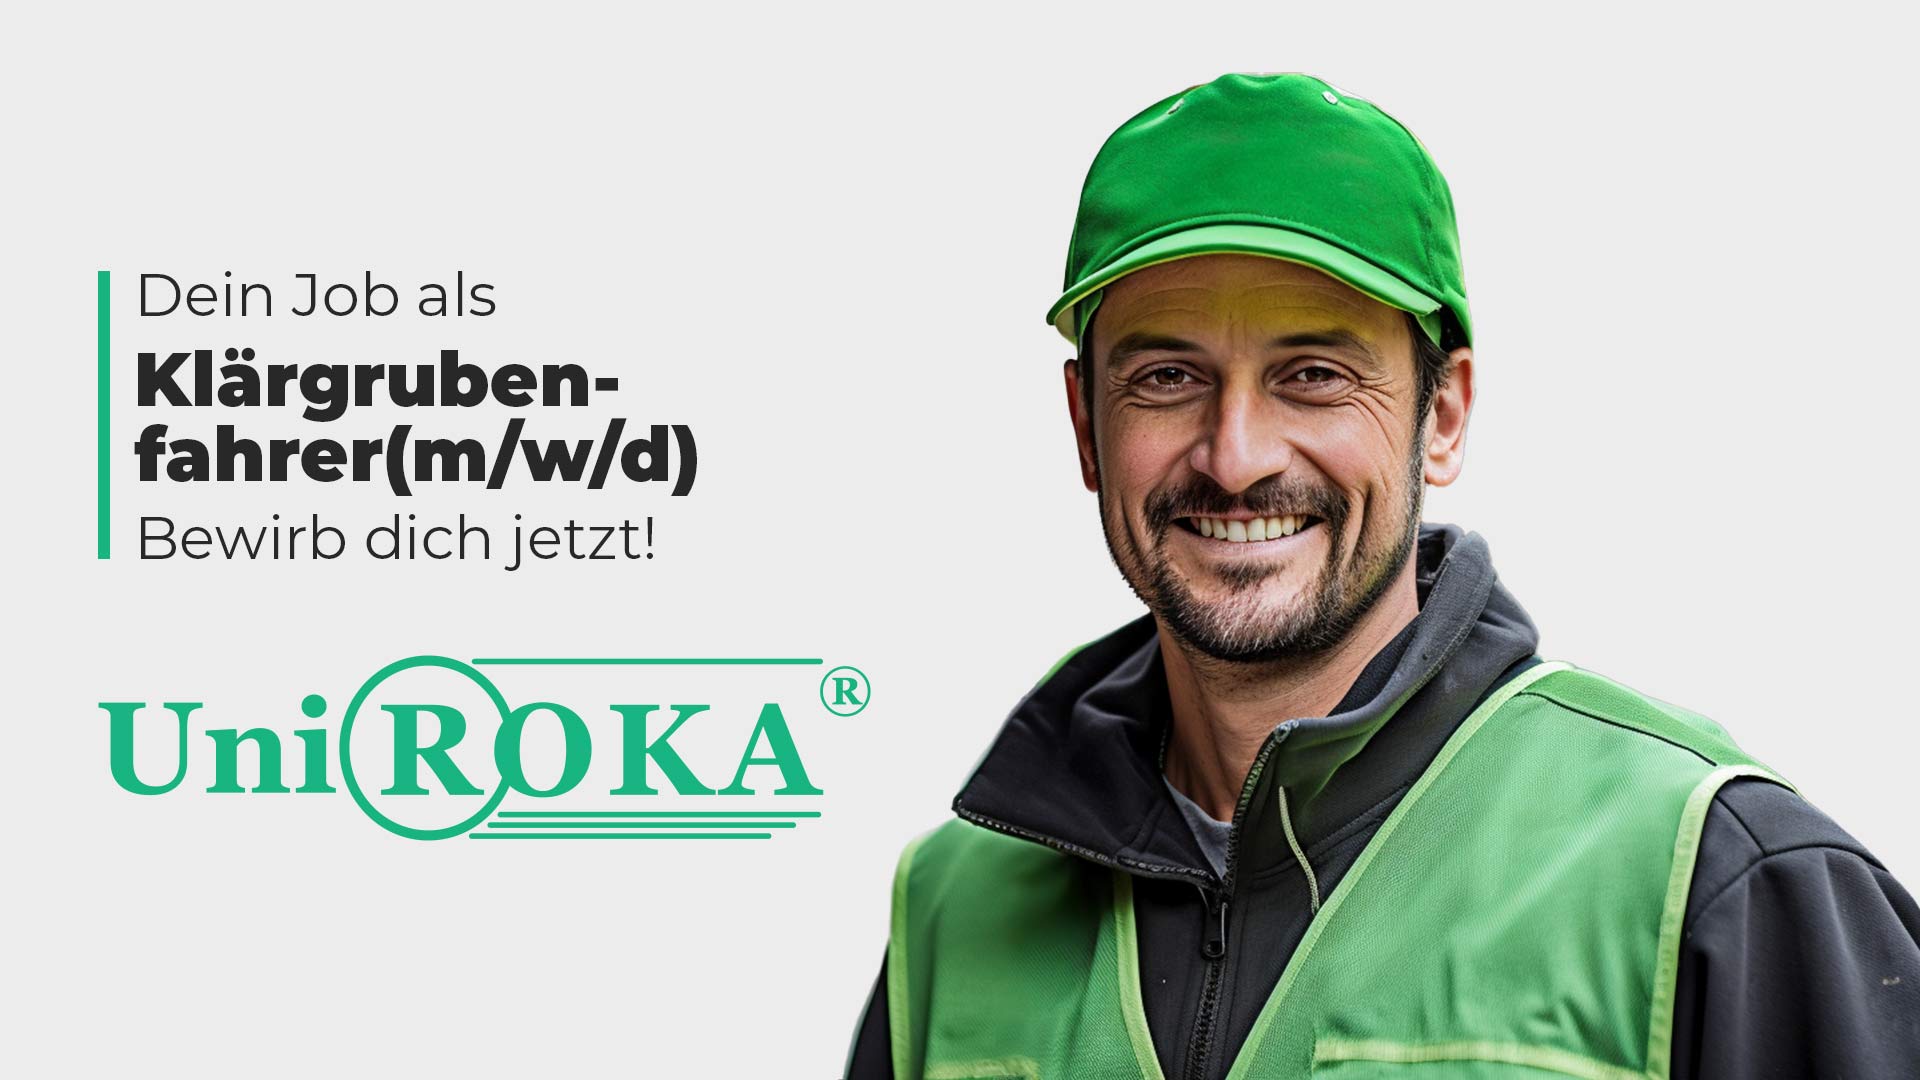 Zu sehen ist ein Handwerker mit grüner Jacke, Stellenanzeige für einen Job als Klärgrubenfahrer (m/w/d) bei Uni Roka Rostock